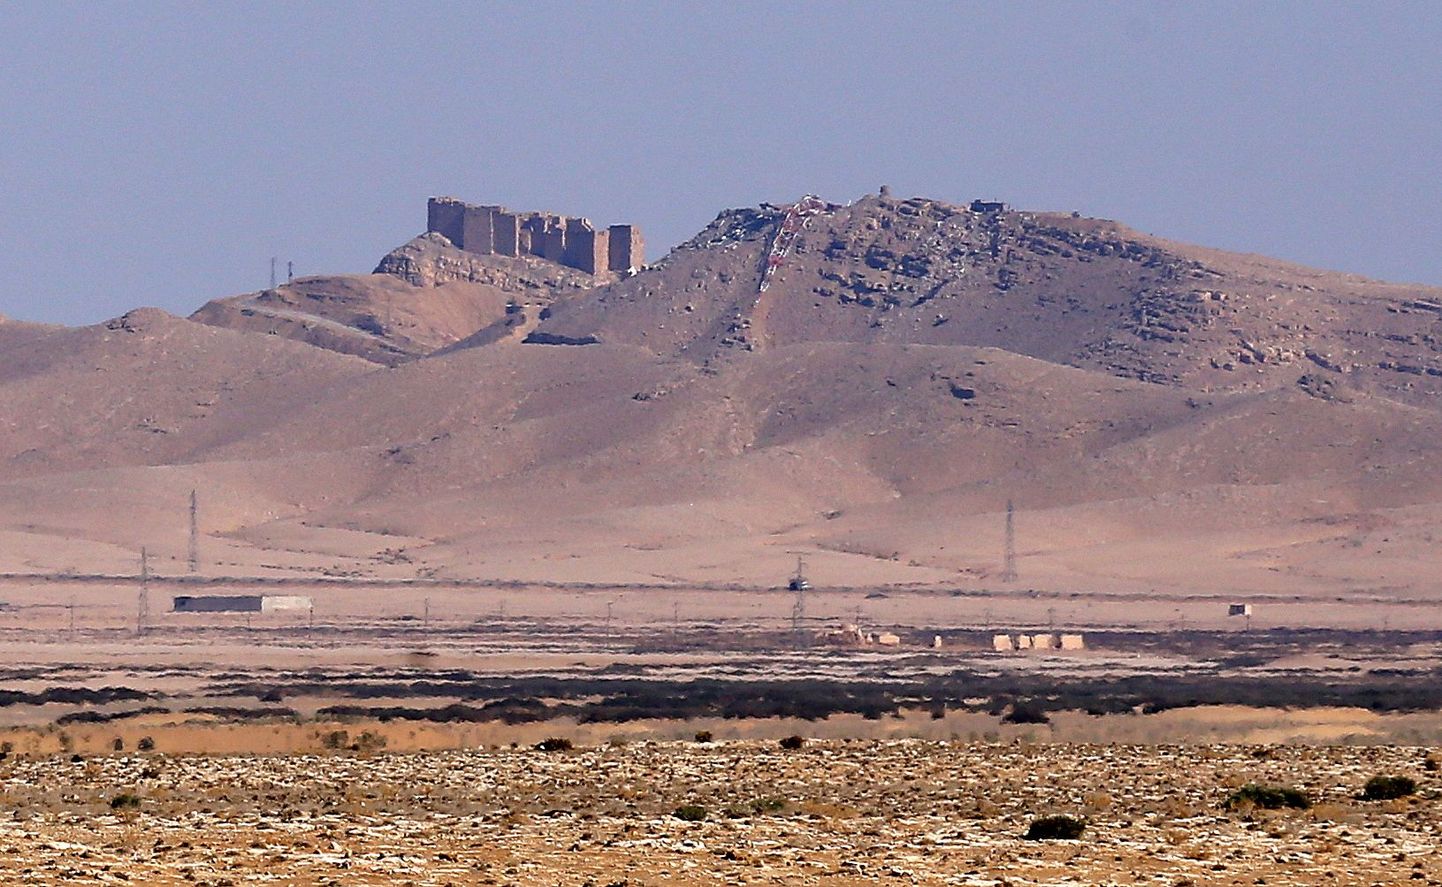 Palmyra (Tadmuri) keskaegne kindlus, mis on Islamiriigi üks positsioone